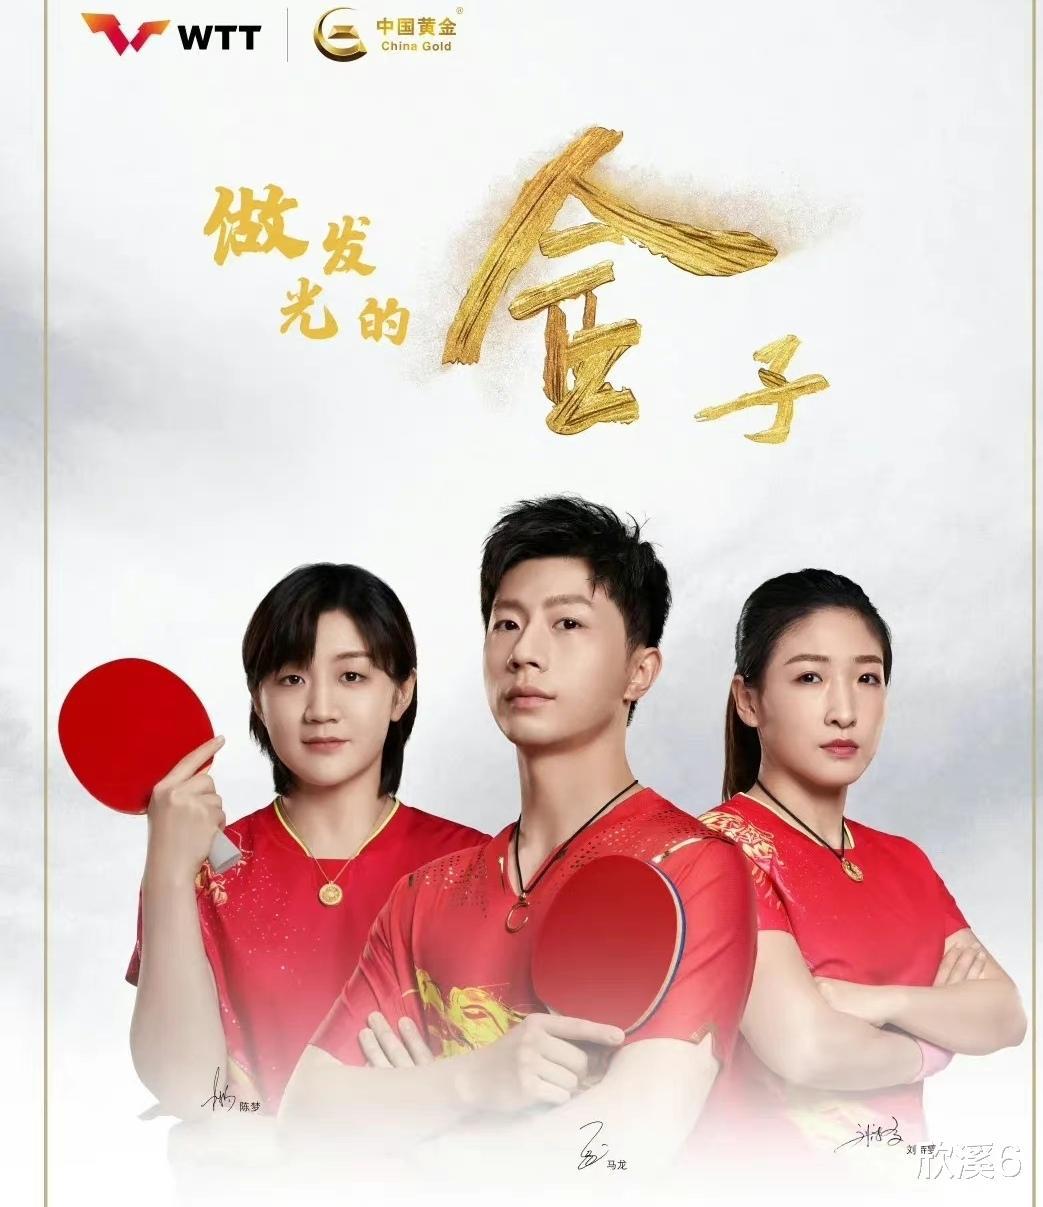 还是刘诗雯成绩好一些，力压孙颖莎和王曼昱为中国黄金做广告代言